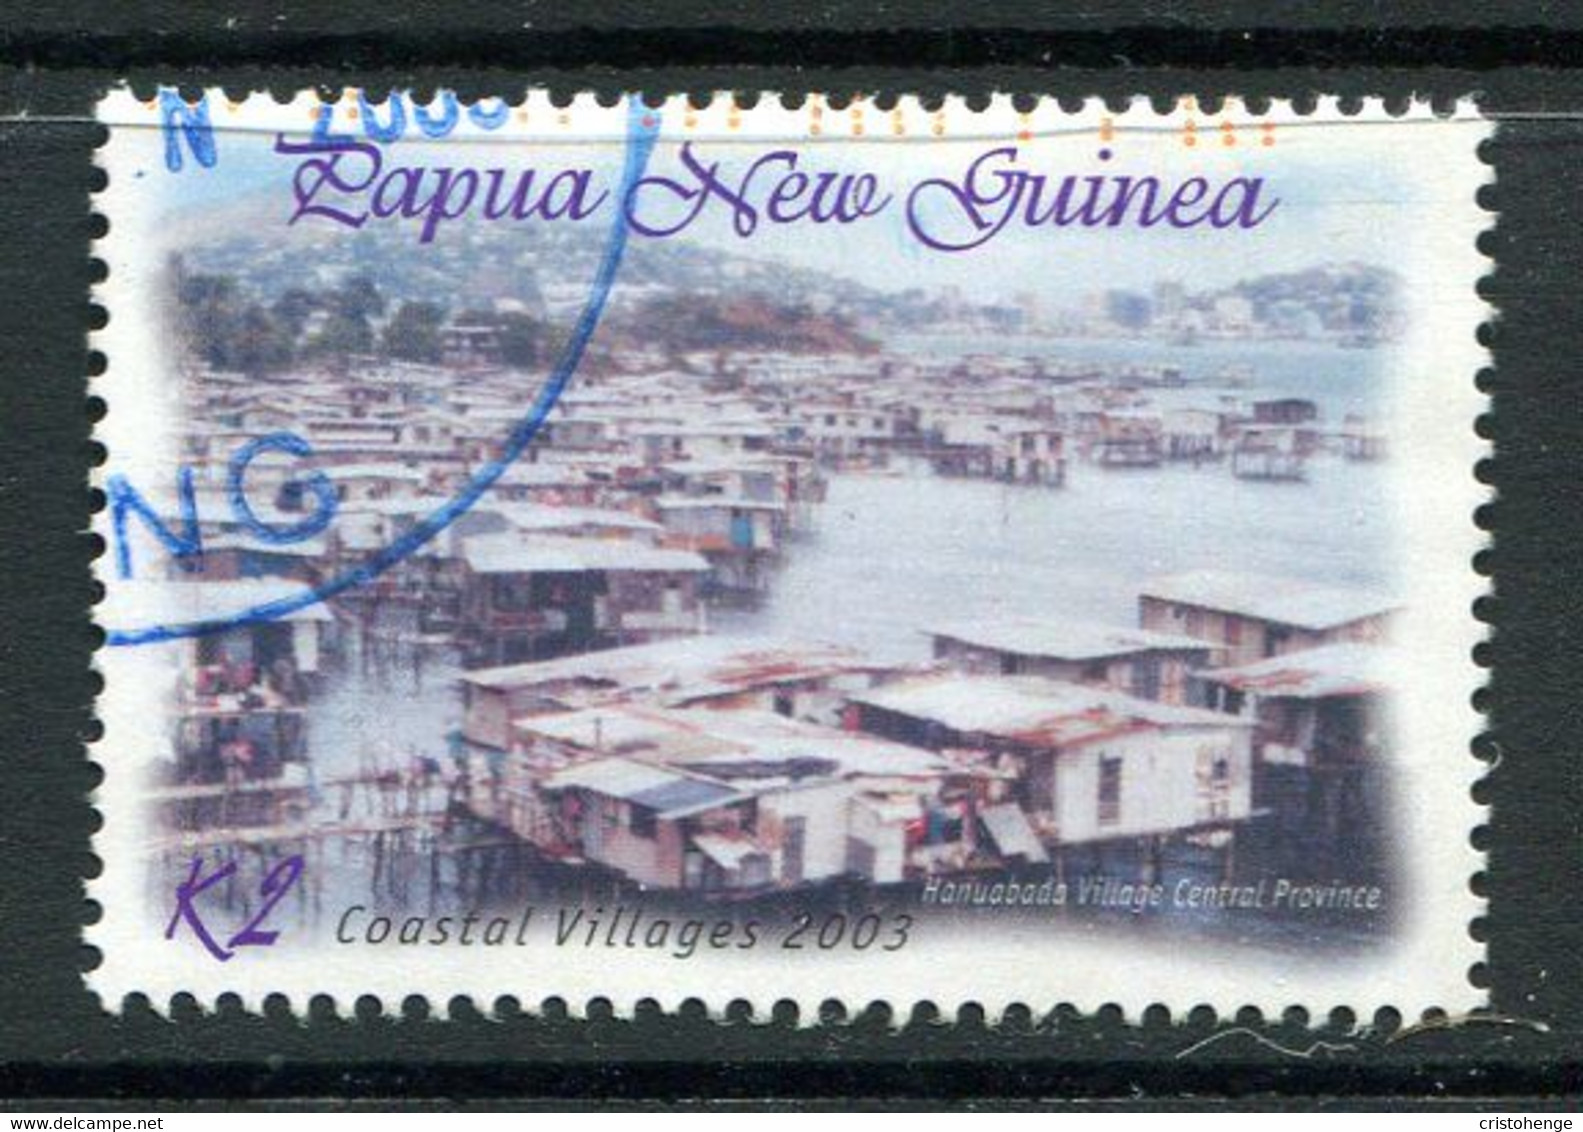 Papua New Guinea 2003 Coastal Villages - 2k Value Used (SG 980) - Papúa Nueva Guinea